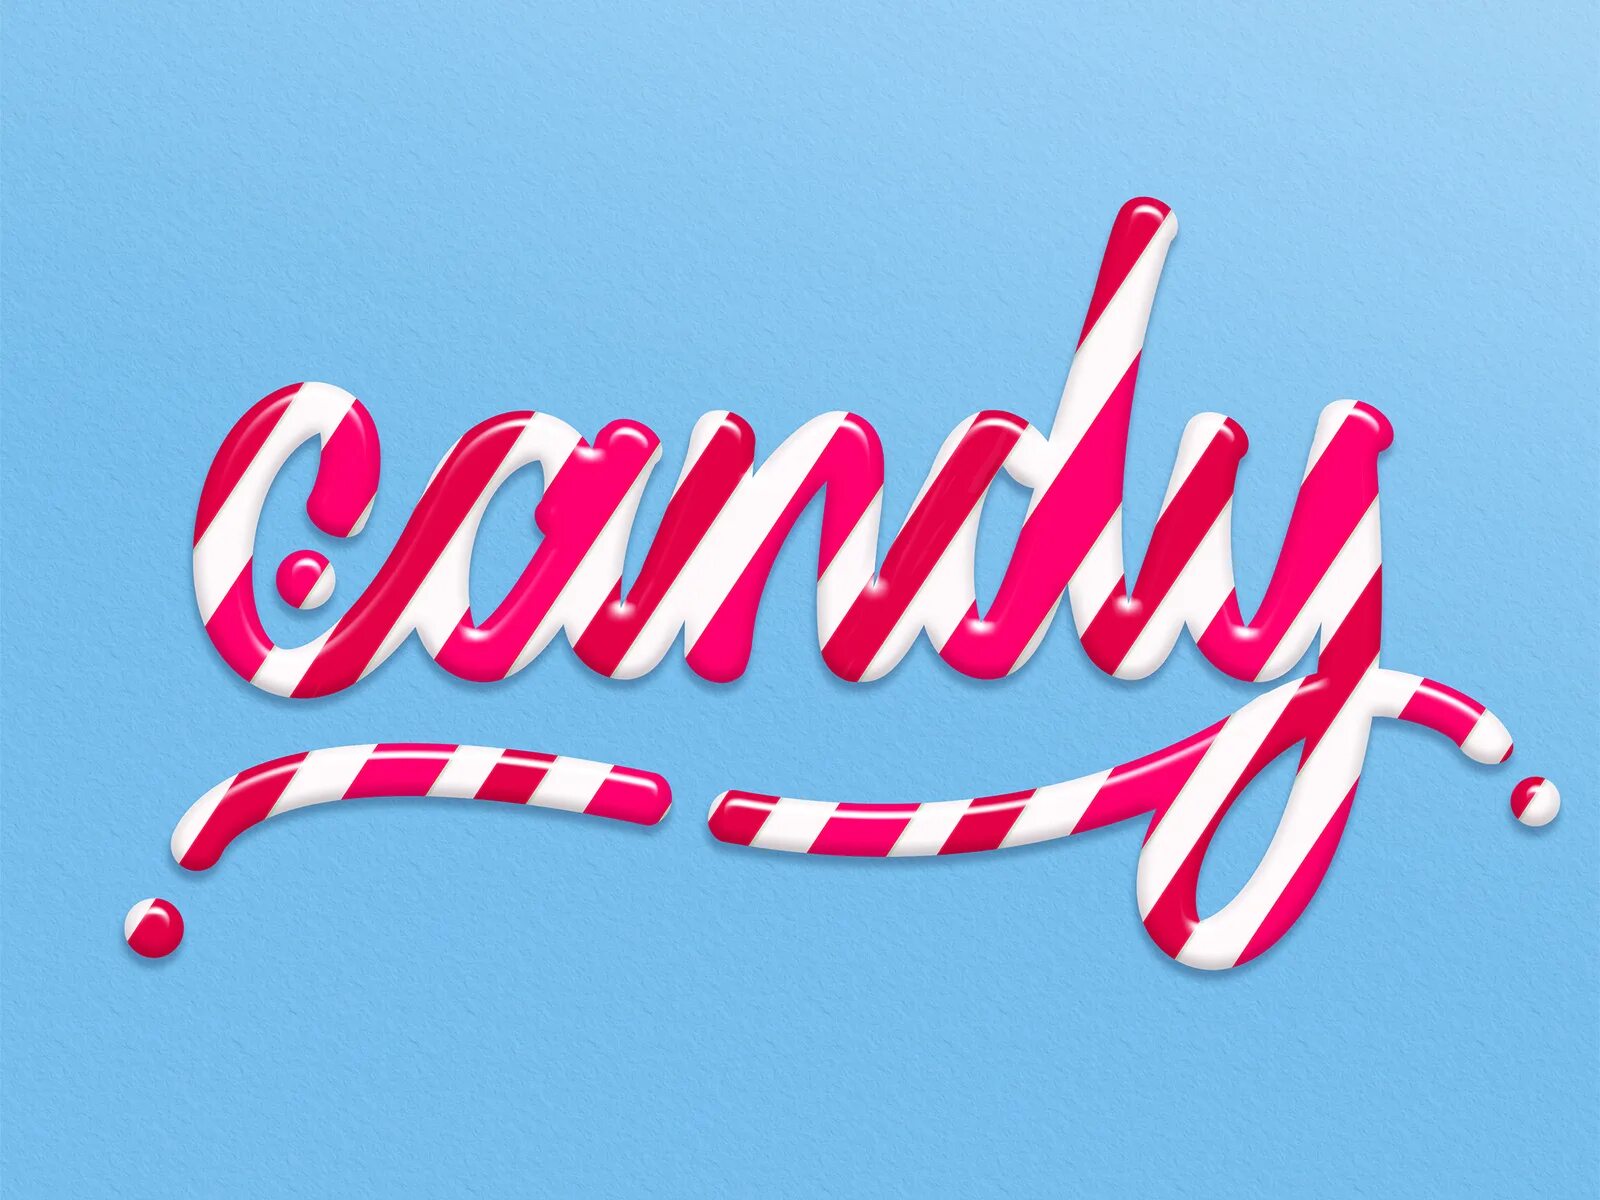 Candy надпись. Красивая надпись Candy. Стиль фотошоп конфеты. Candy Land леттеринг.